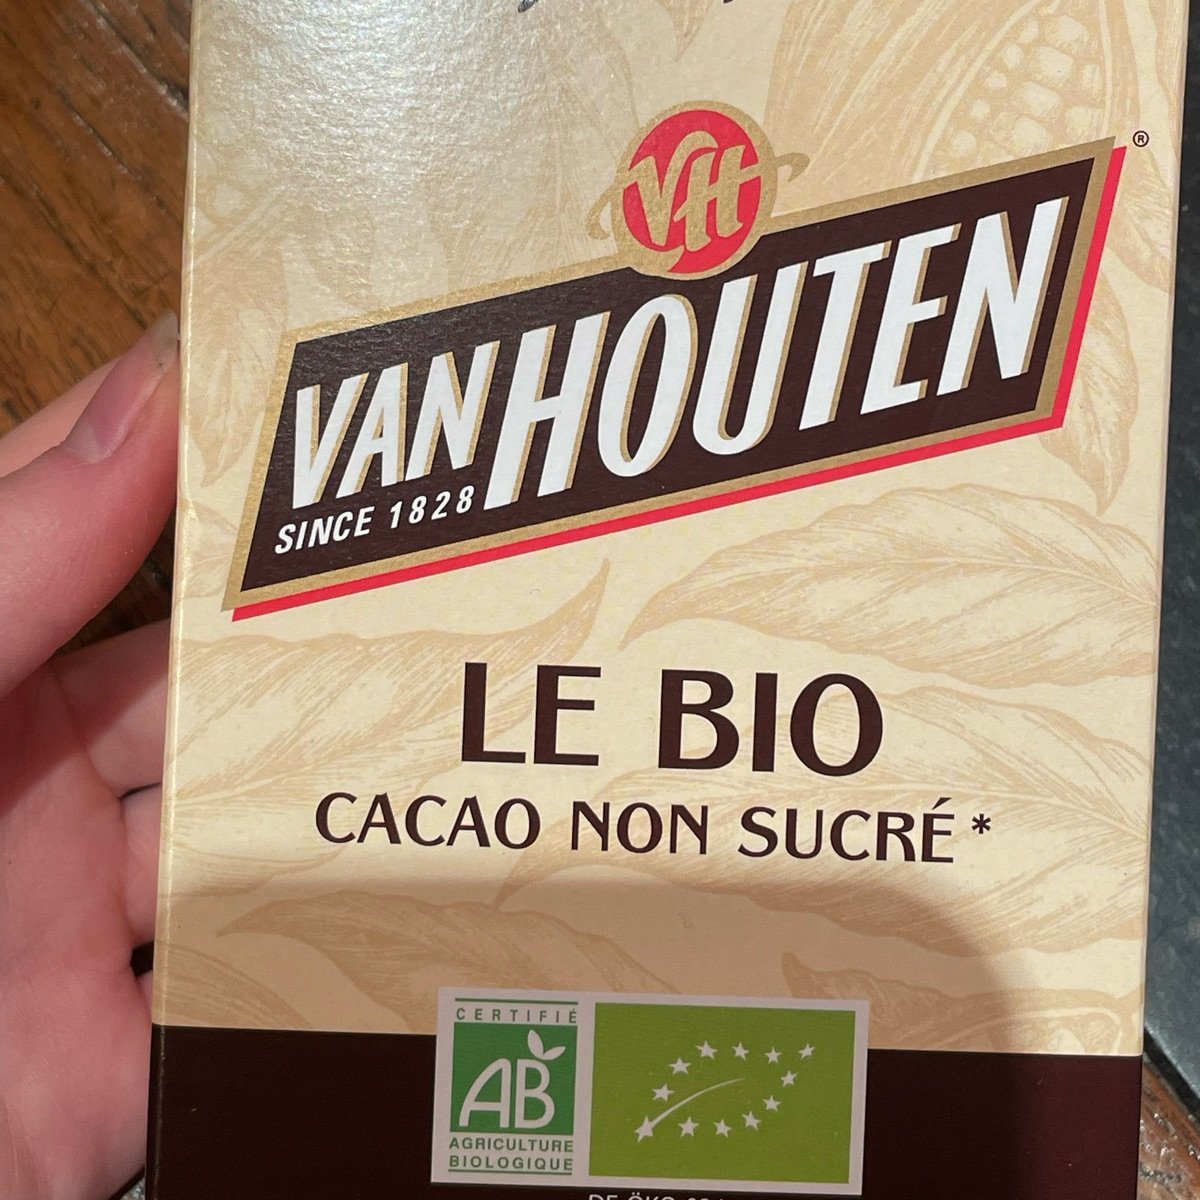 Van Houten Cacao non sucré Reviews